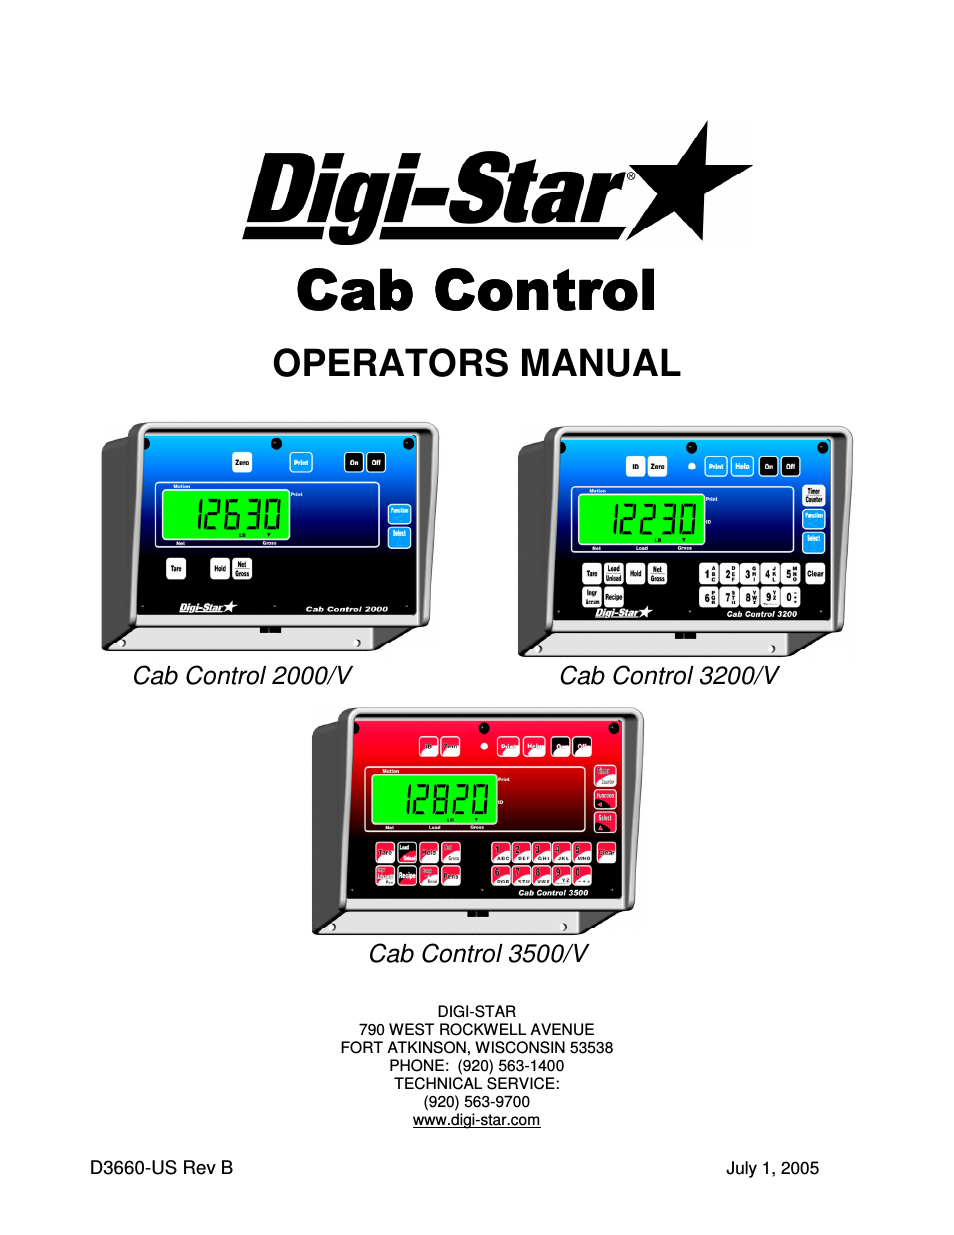 Cab Control 2000/V